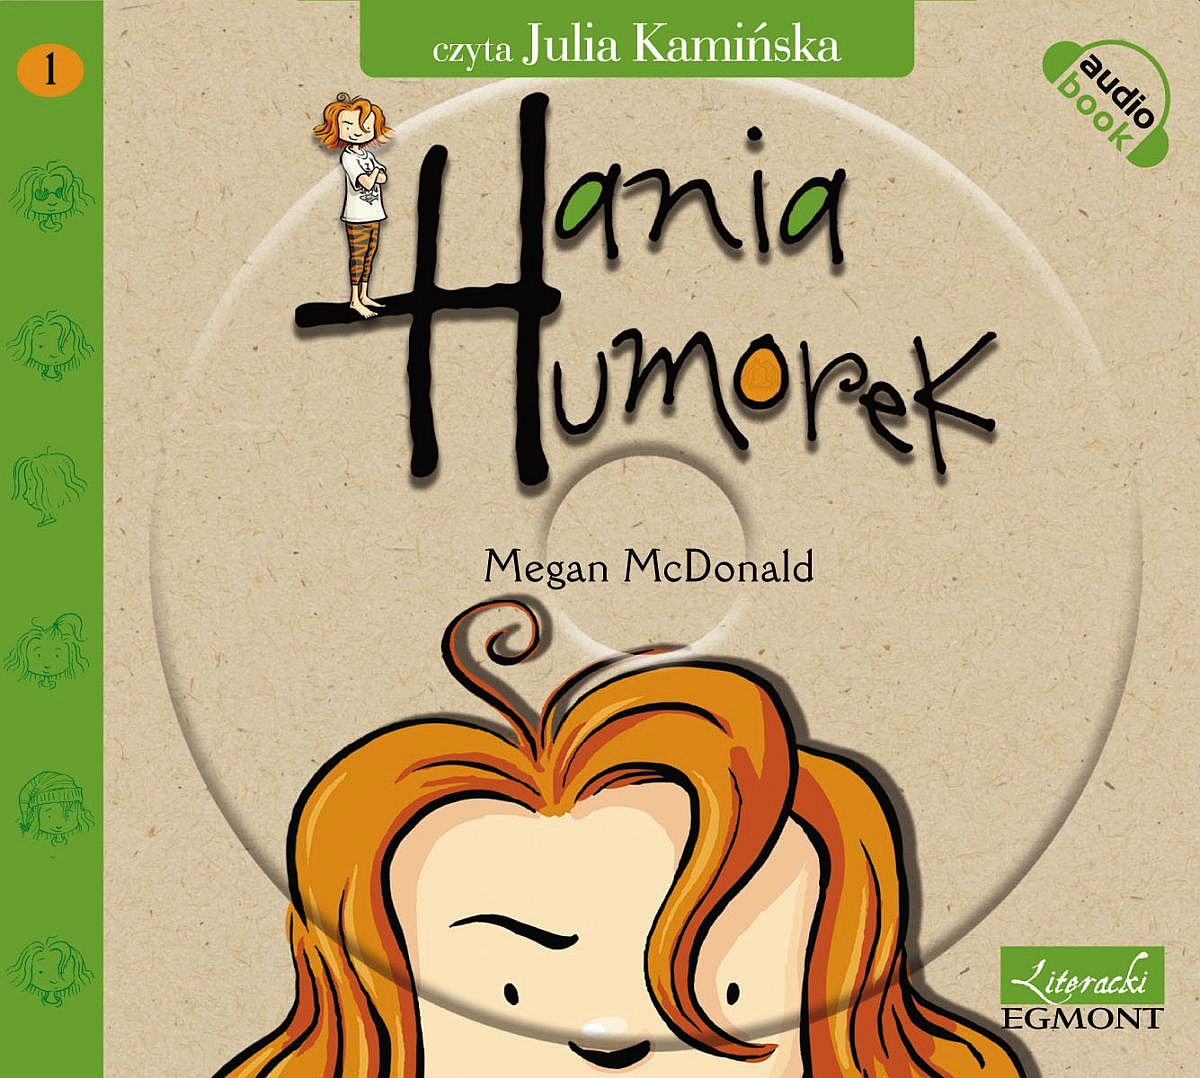 McDONALD MEGAN - HANIA HUMOREK 1. HANIA HUMOREK